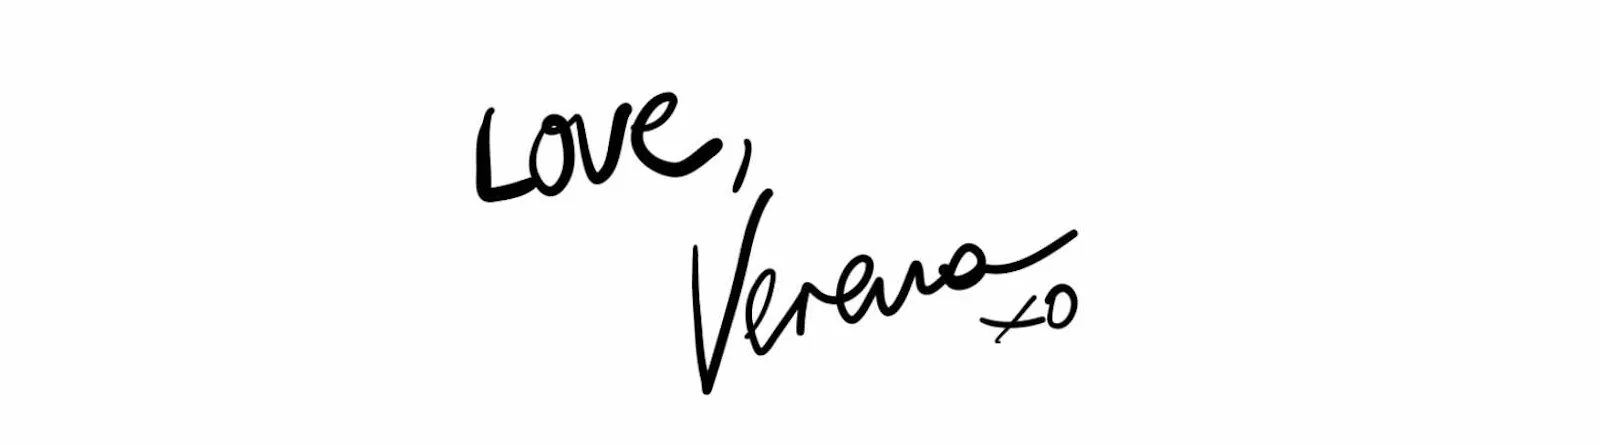 Love, Verena